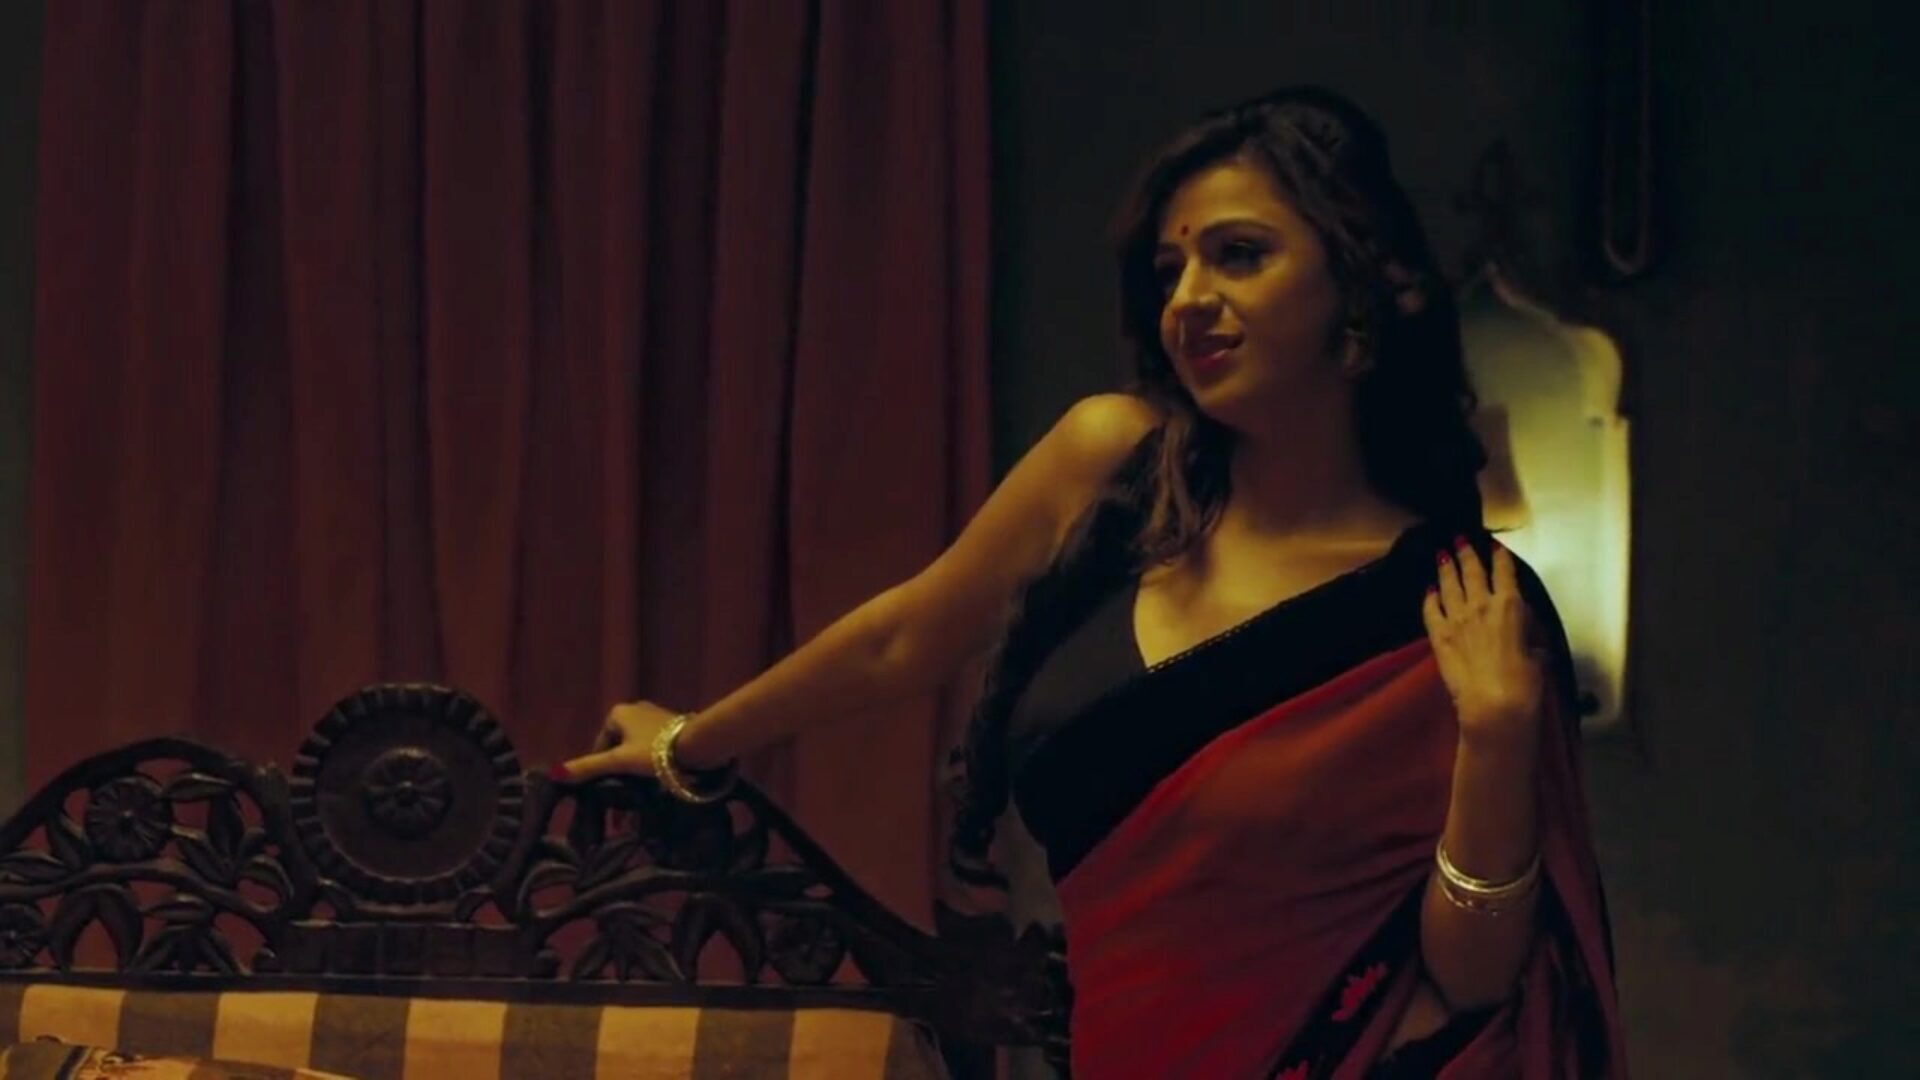 индийская актриса кениша авастхи занимается сексом с пандитом джи за наличные. Кениша в роли актрисы бинду, занимающейся платным сексом за дополнительные деньги с индусским пандитом джи, после того, как эта красотка повысила индийского политика. пандит джи разорвет ее стойку, она громко стонет и говорит пандит джи аарам се карийе.